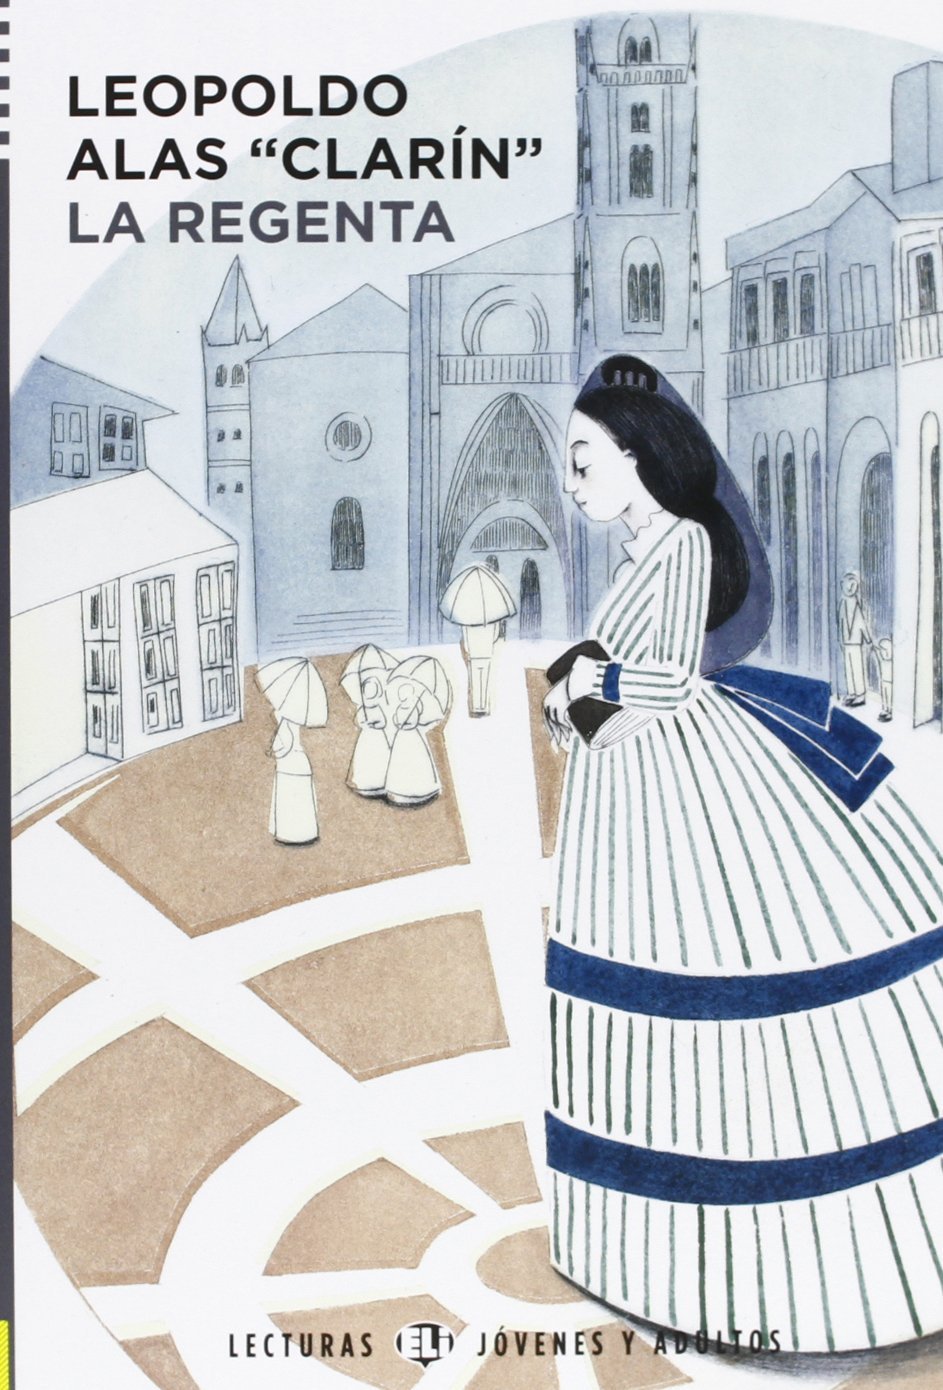 Regenta, La Edición especial y numerada - Leopoldo Alas Clarín -  comprar libro 9788487531415 - Cervantes